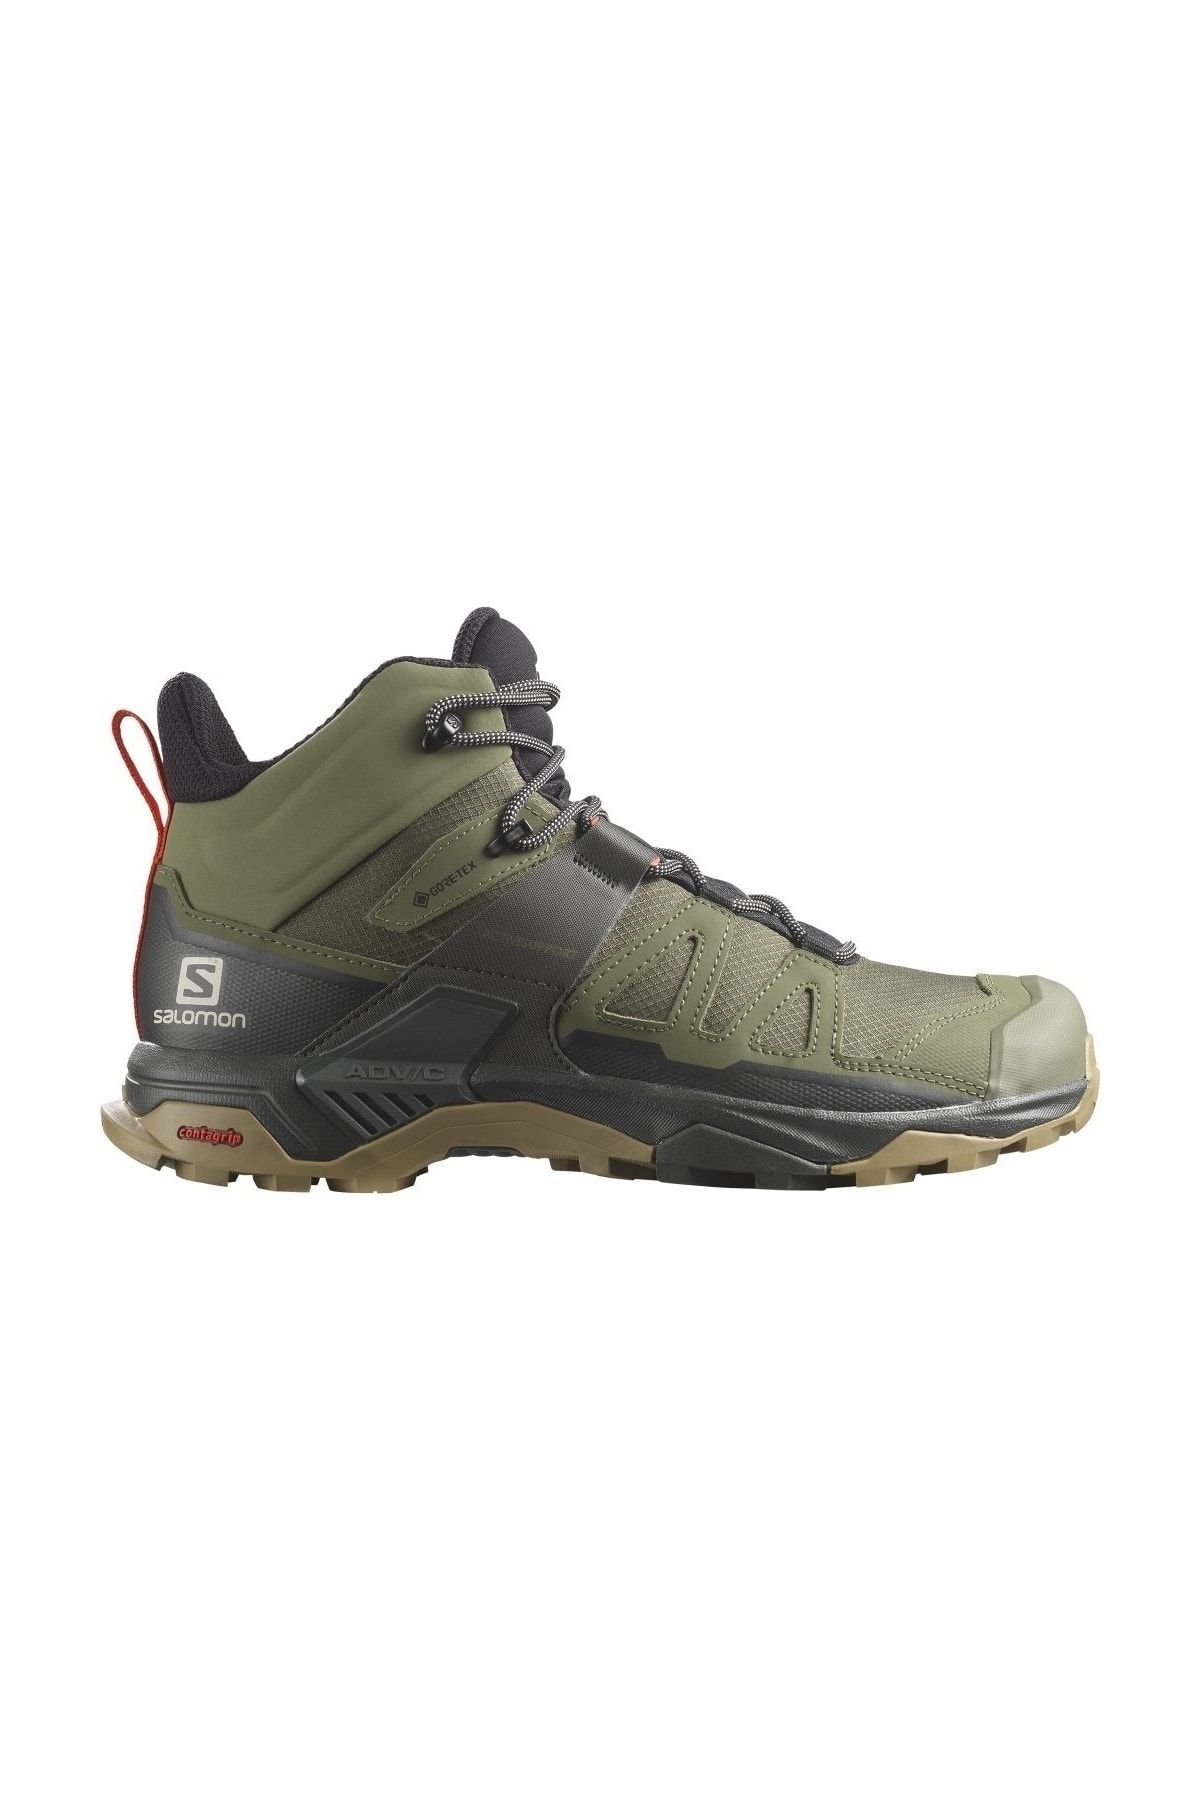 Salomon X Ultra 4 Yeşil Outdoor Ayakkabı (l41739800)